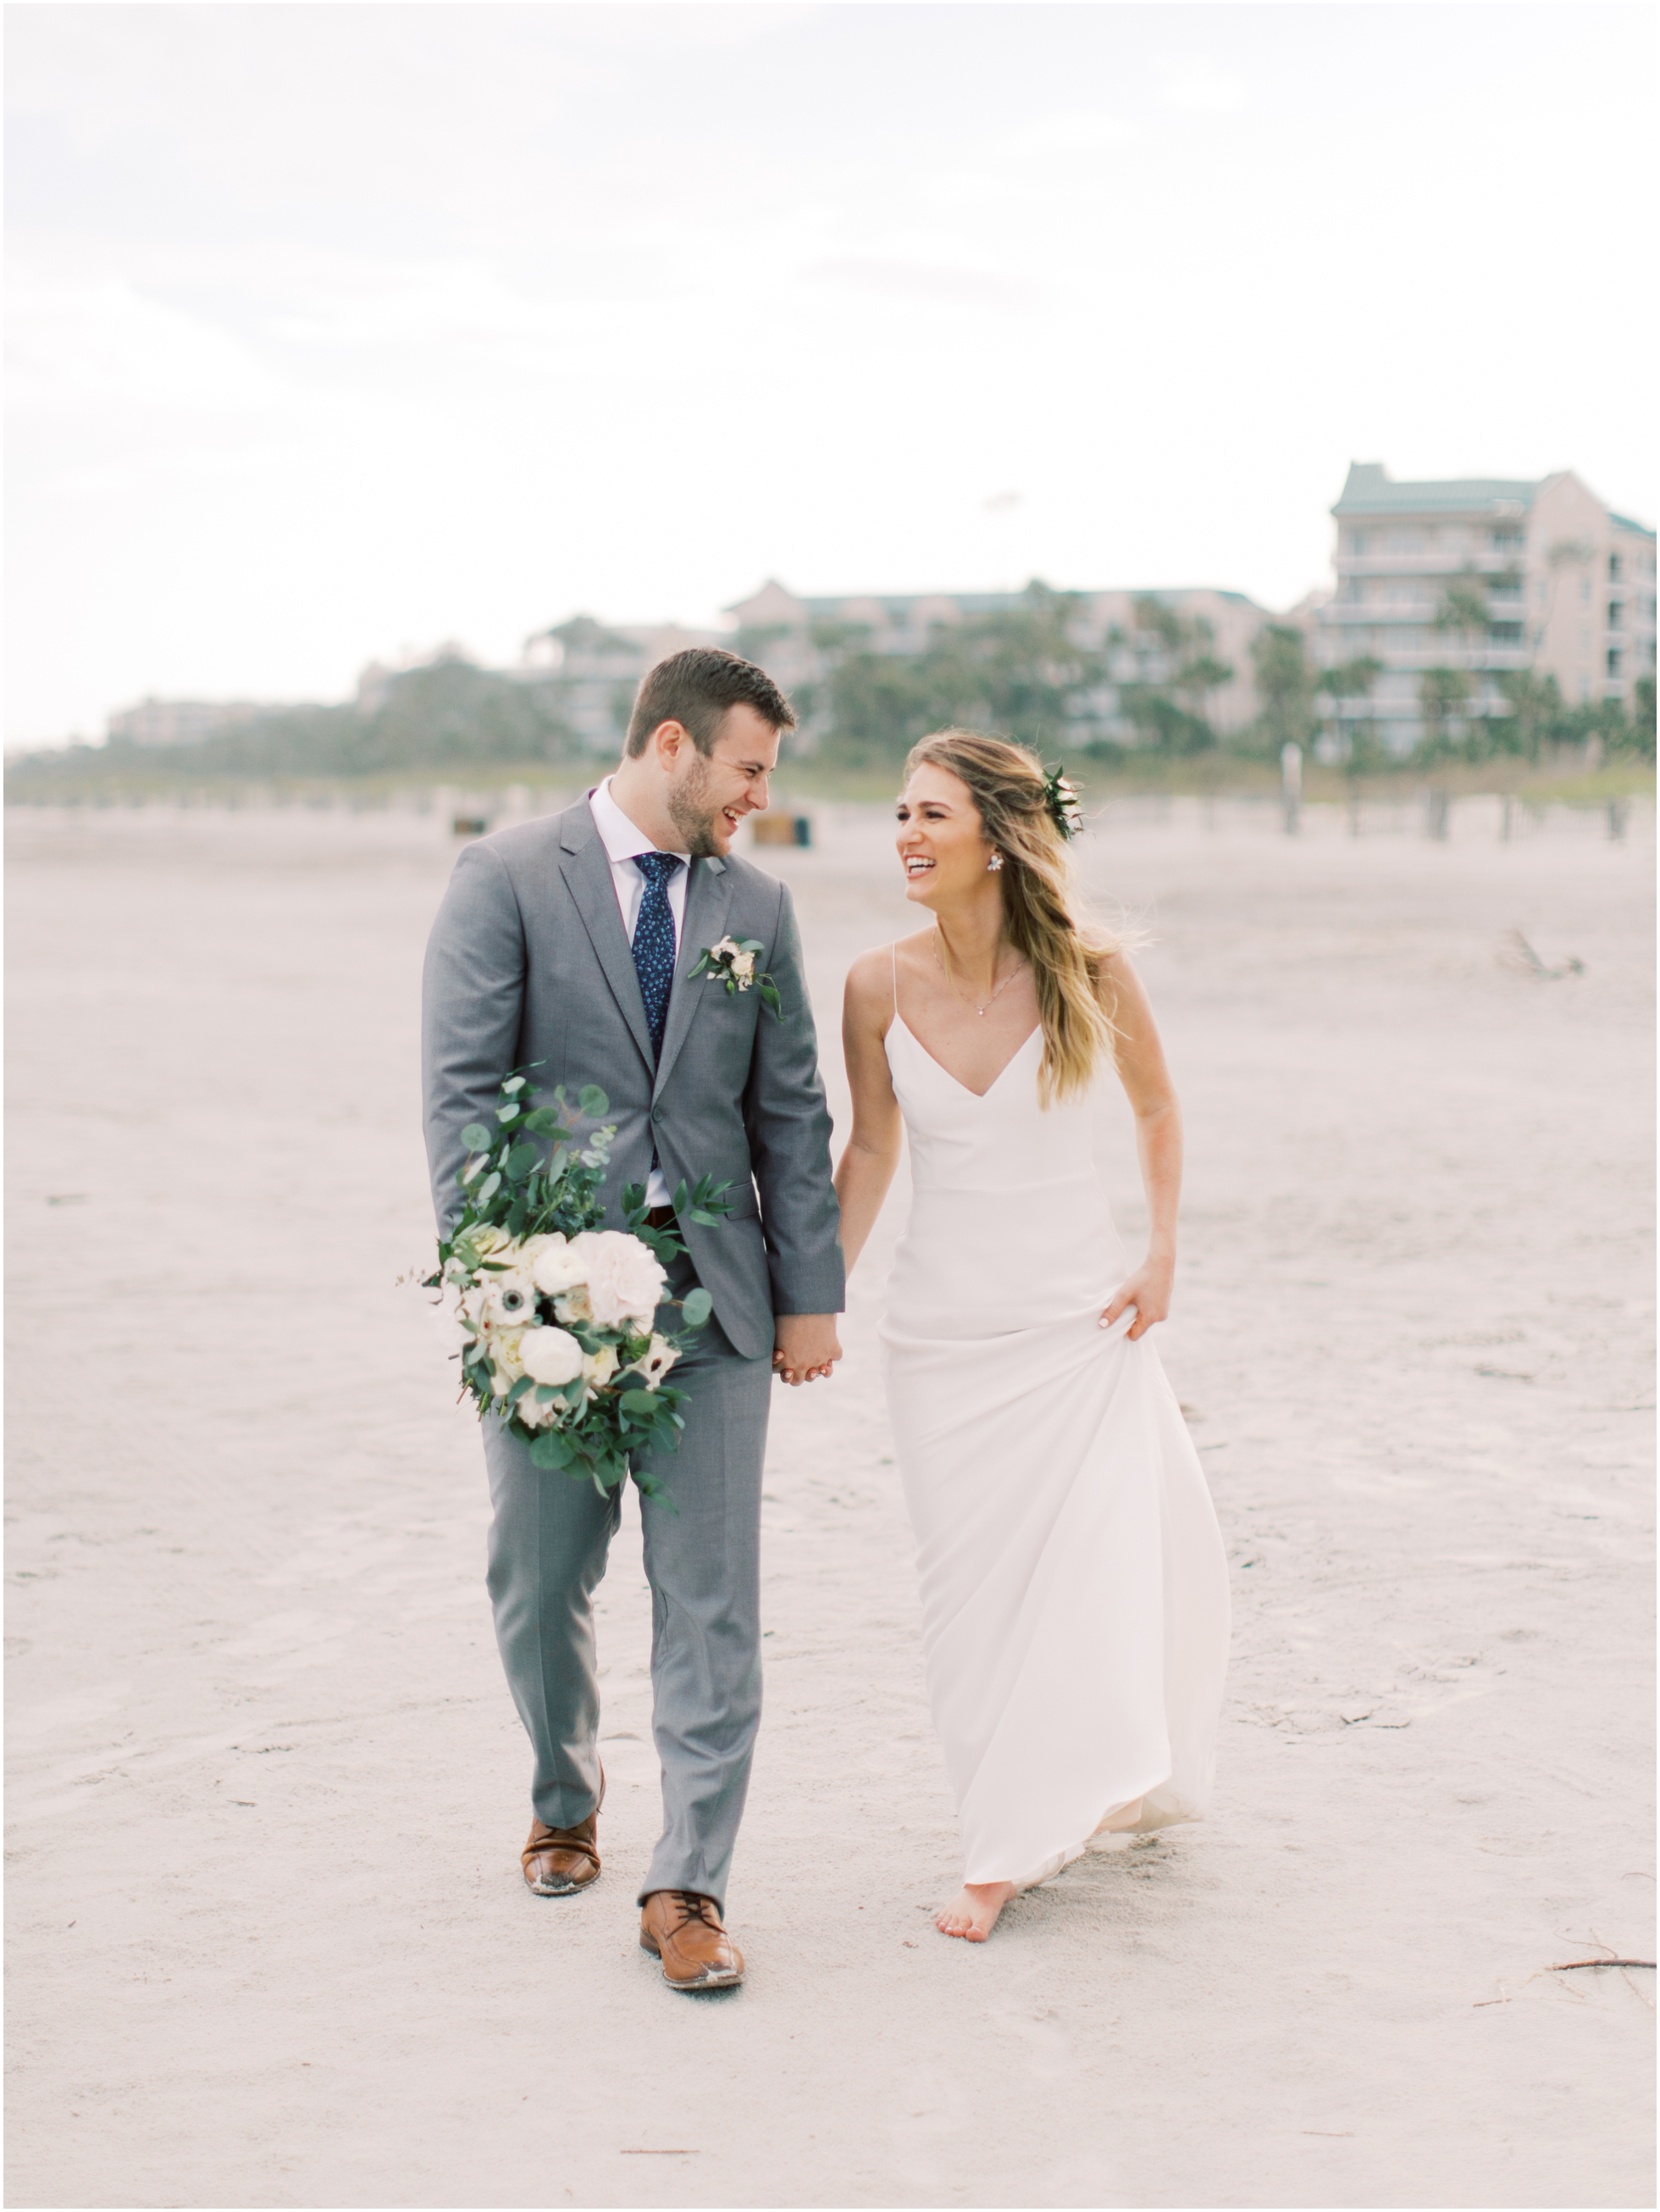 A Beachy, Breezy Hilton Head Island Wedding at the Omni